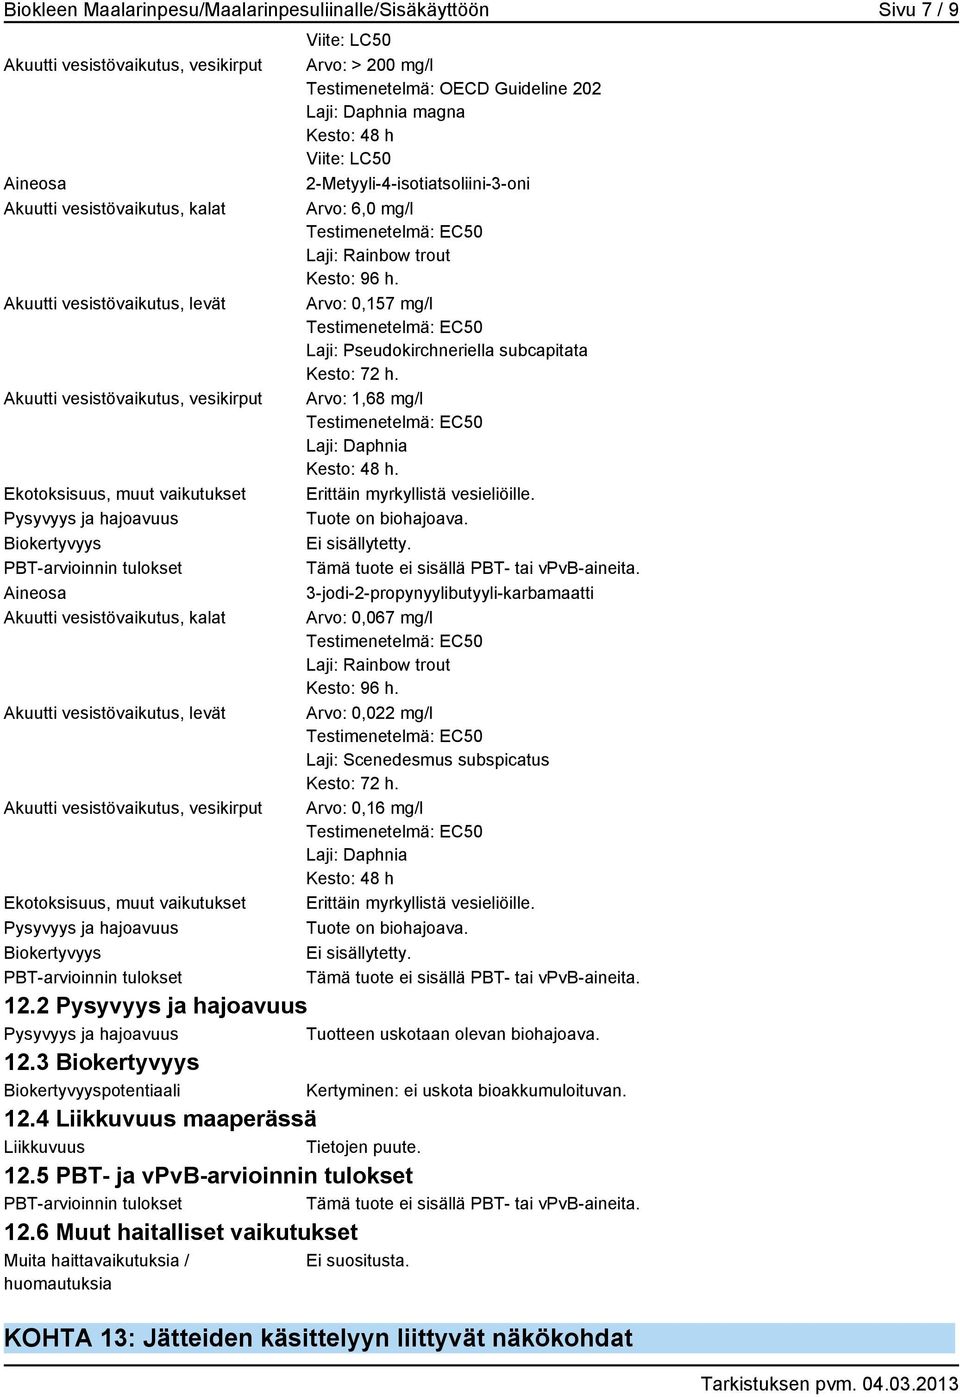 Ekotoksisuus, muut vaikutukset Pysyvyys ja hajoavuus Biokertyvyys PBT-arvioinnin tulokset Viite: LC50 Arvo: > 200 mg/l Testimenetelmä: OECD Guideline 202 Laji: Daphnia magna Kesto: 48 h Viite: LC50